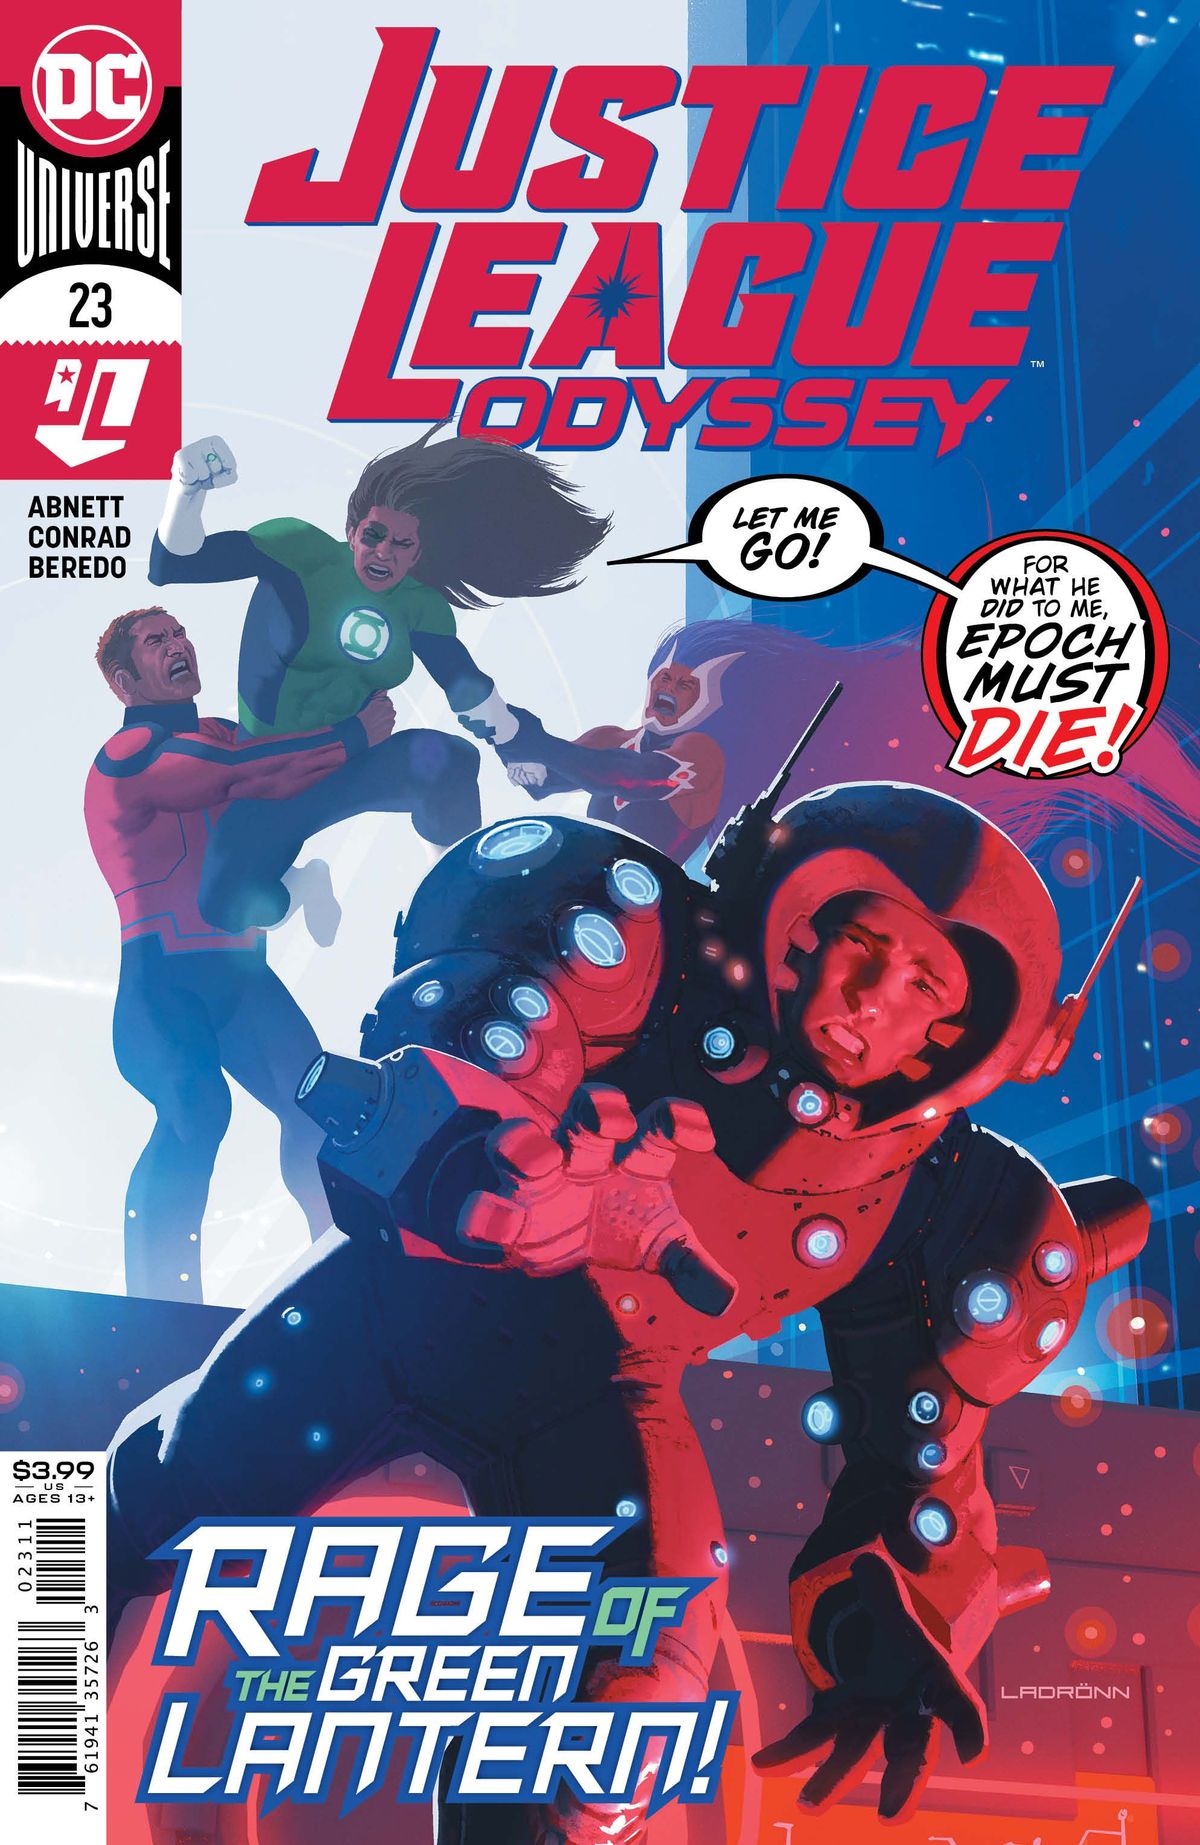 FORUDSIGT: Justice League Odyssey # 23